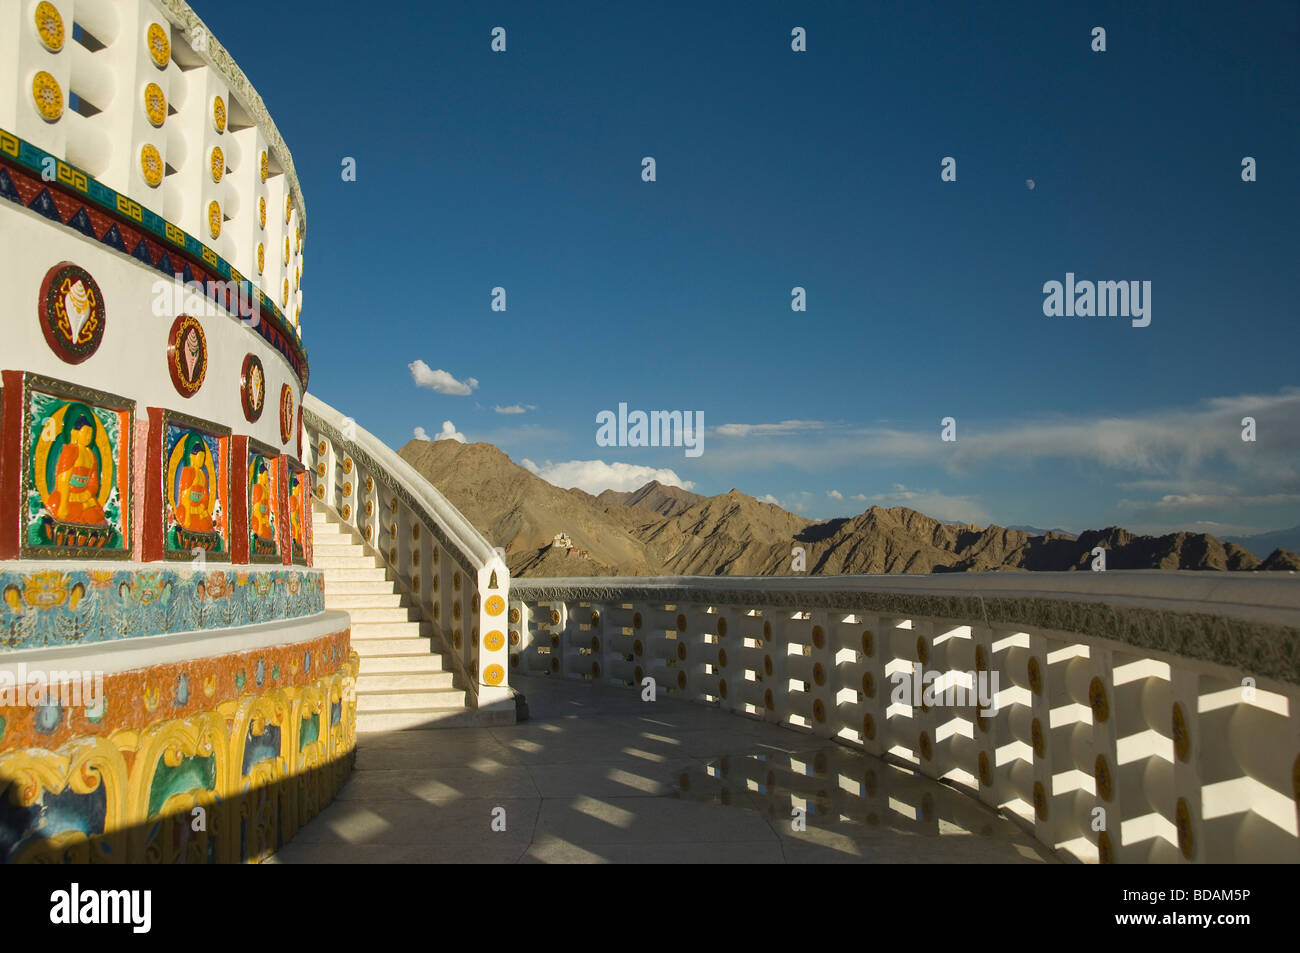 Buddha paintings on the wall of a stupa, Shanti Stupa, Leh, Ladakh, Jammu and Kashmir, India Stock Photo